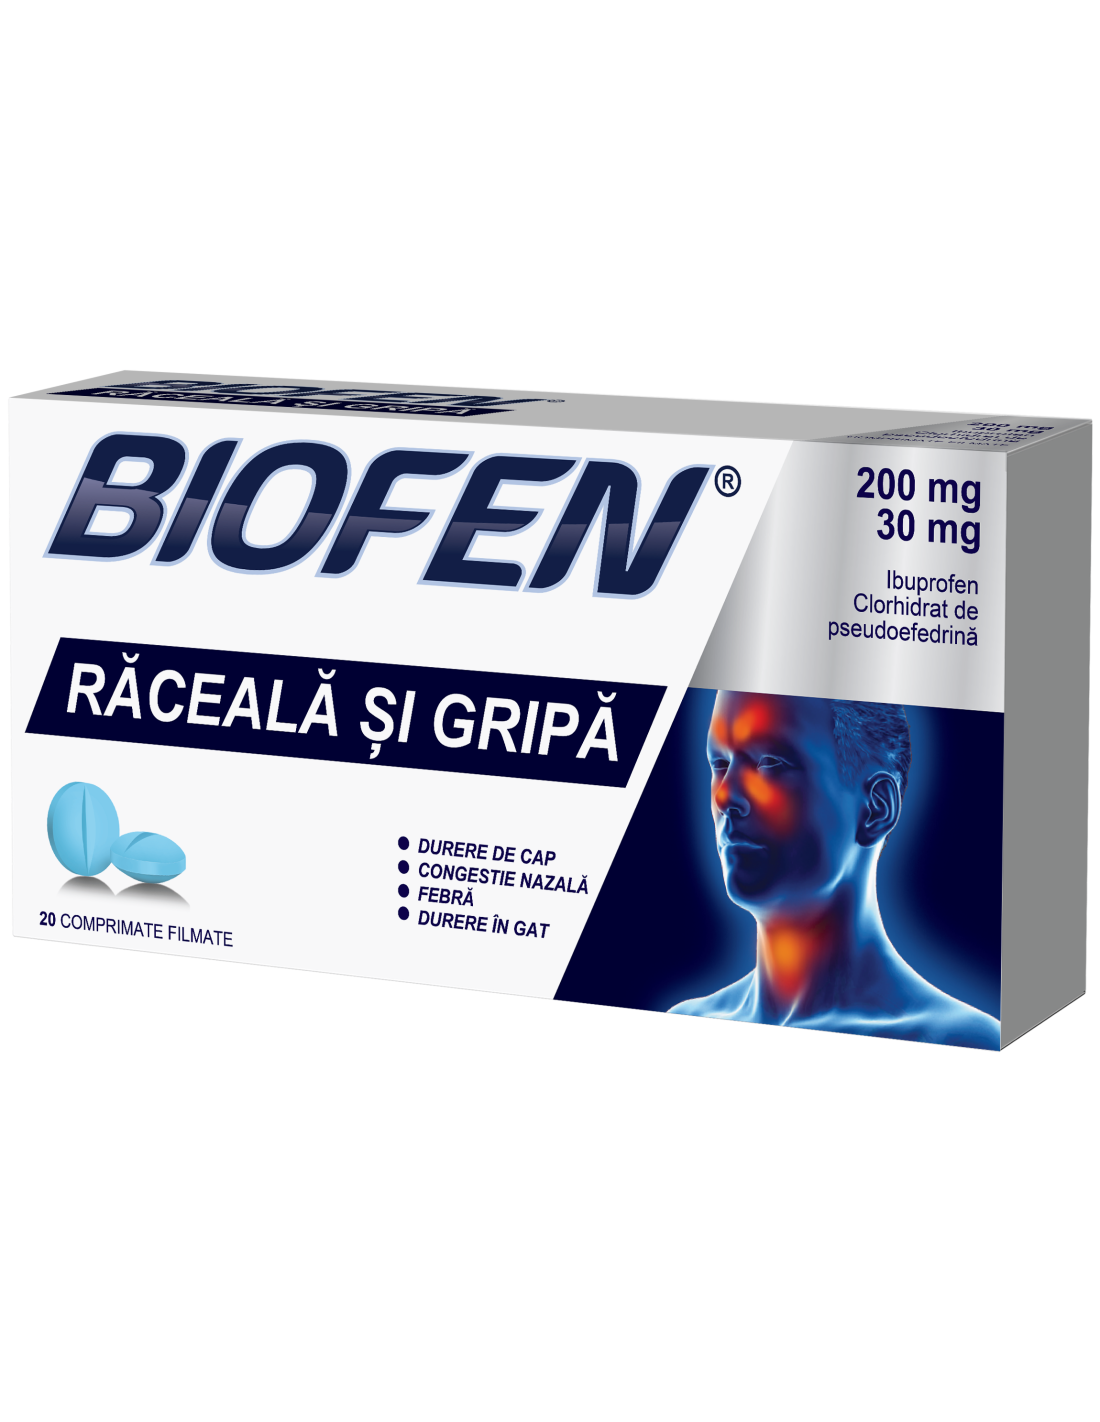 Raceala si gripa - Biofen Răceală și Gripă, 200mg/30mg, 20 comprimate filmate, Biofarm, sinapis.ro